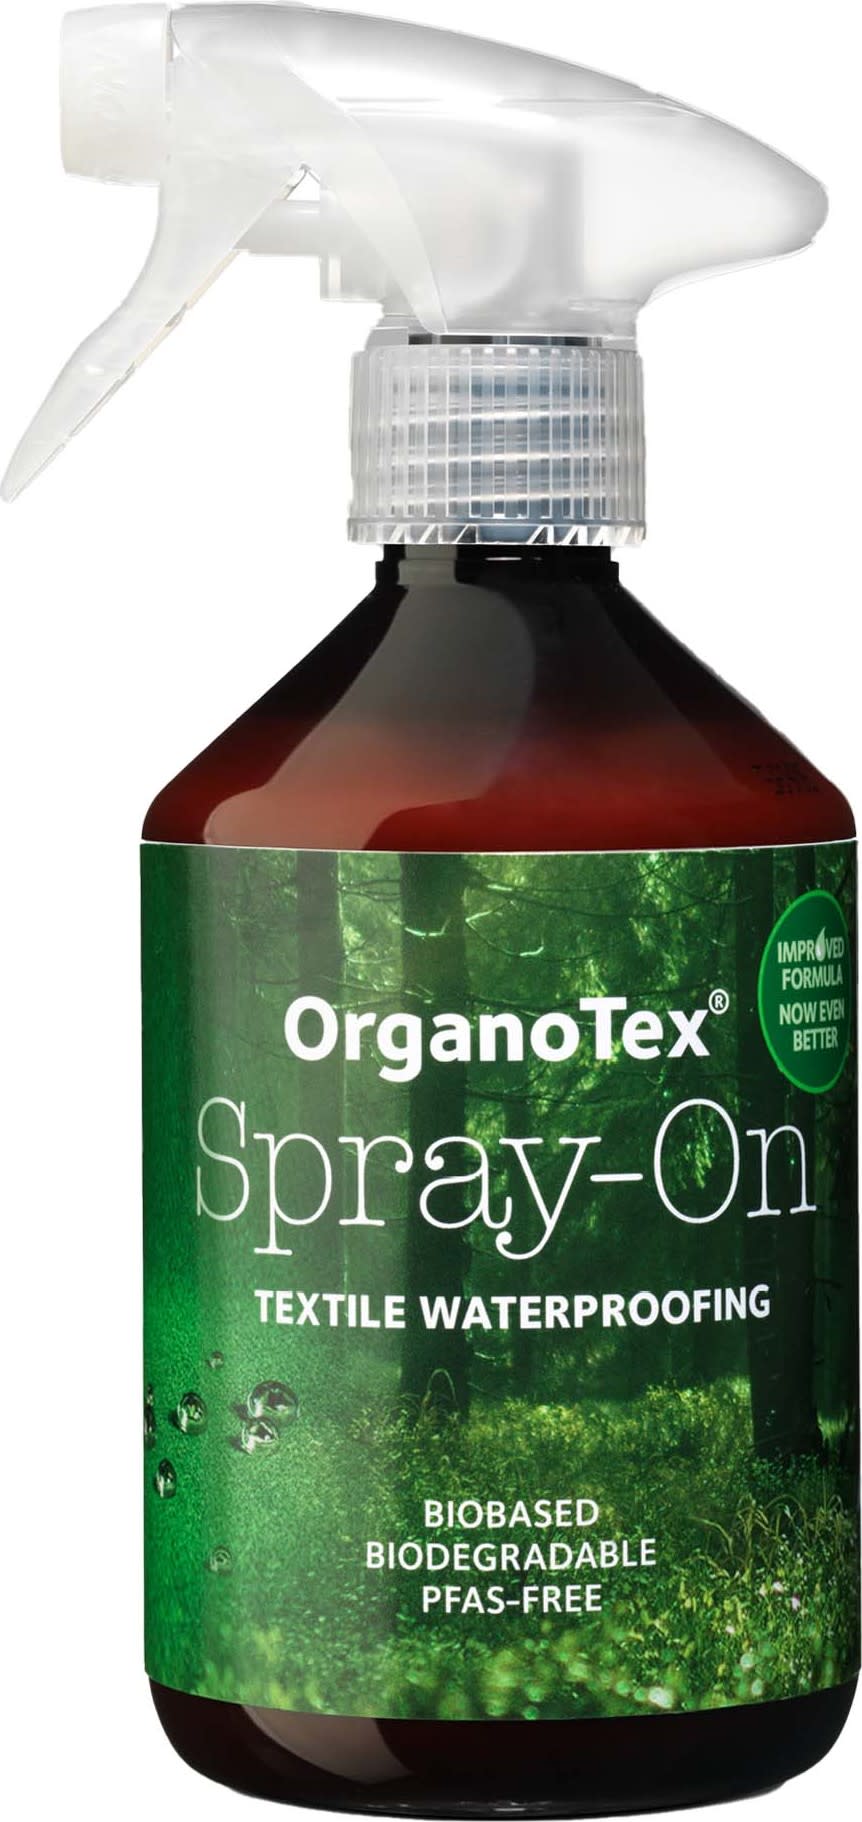 OrganoTex Spray-On DWR Waterproofing - Blue LOOP Originals